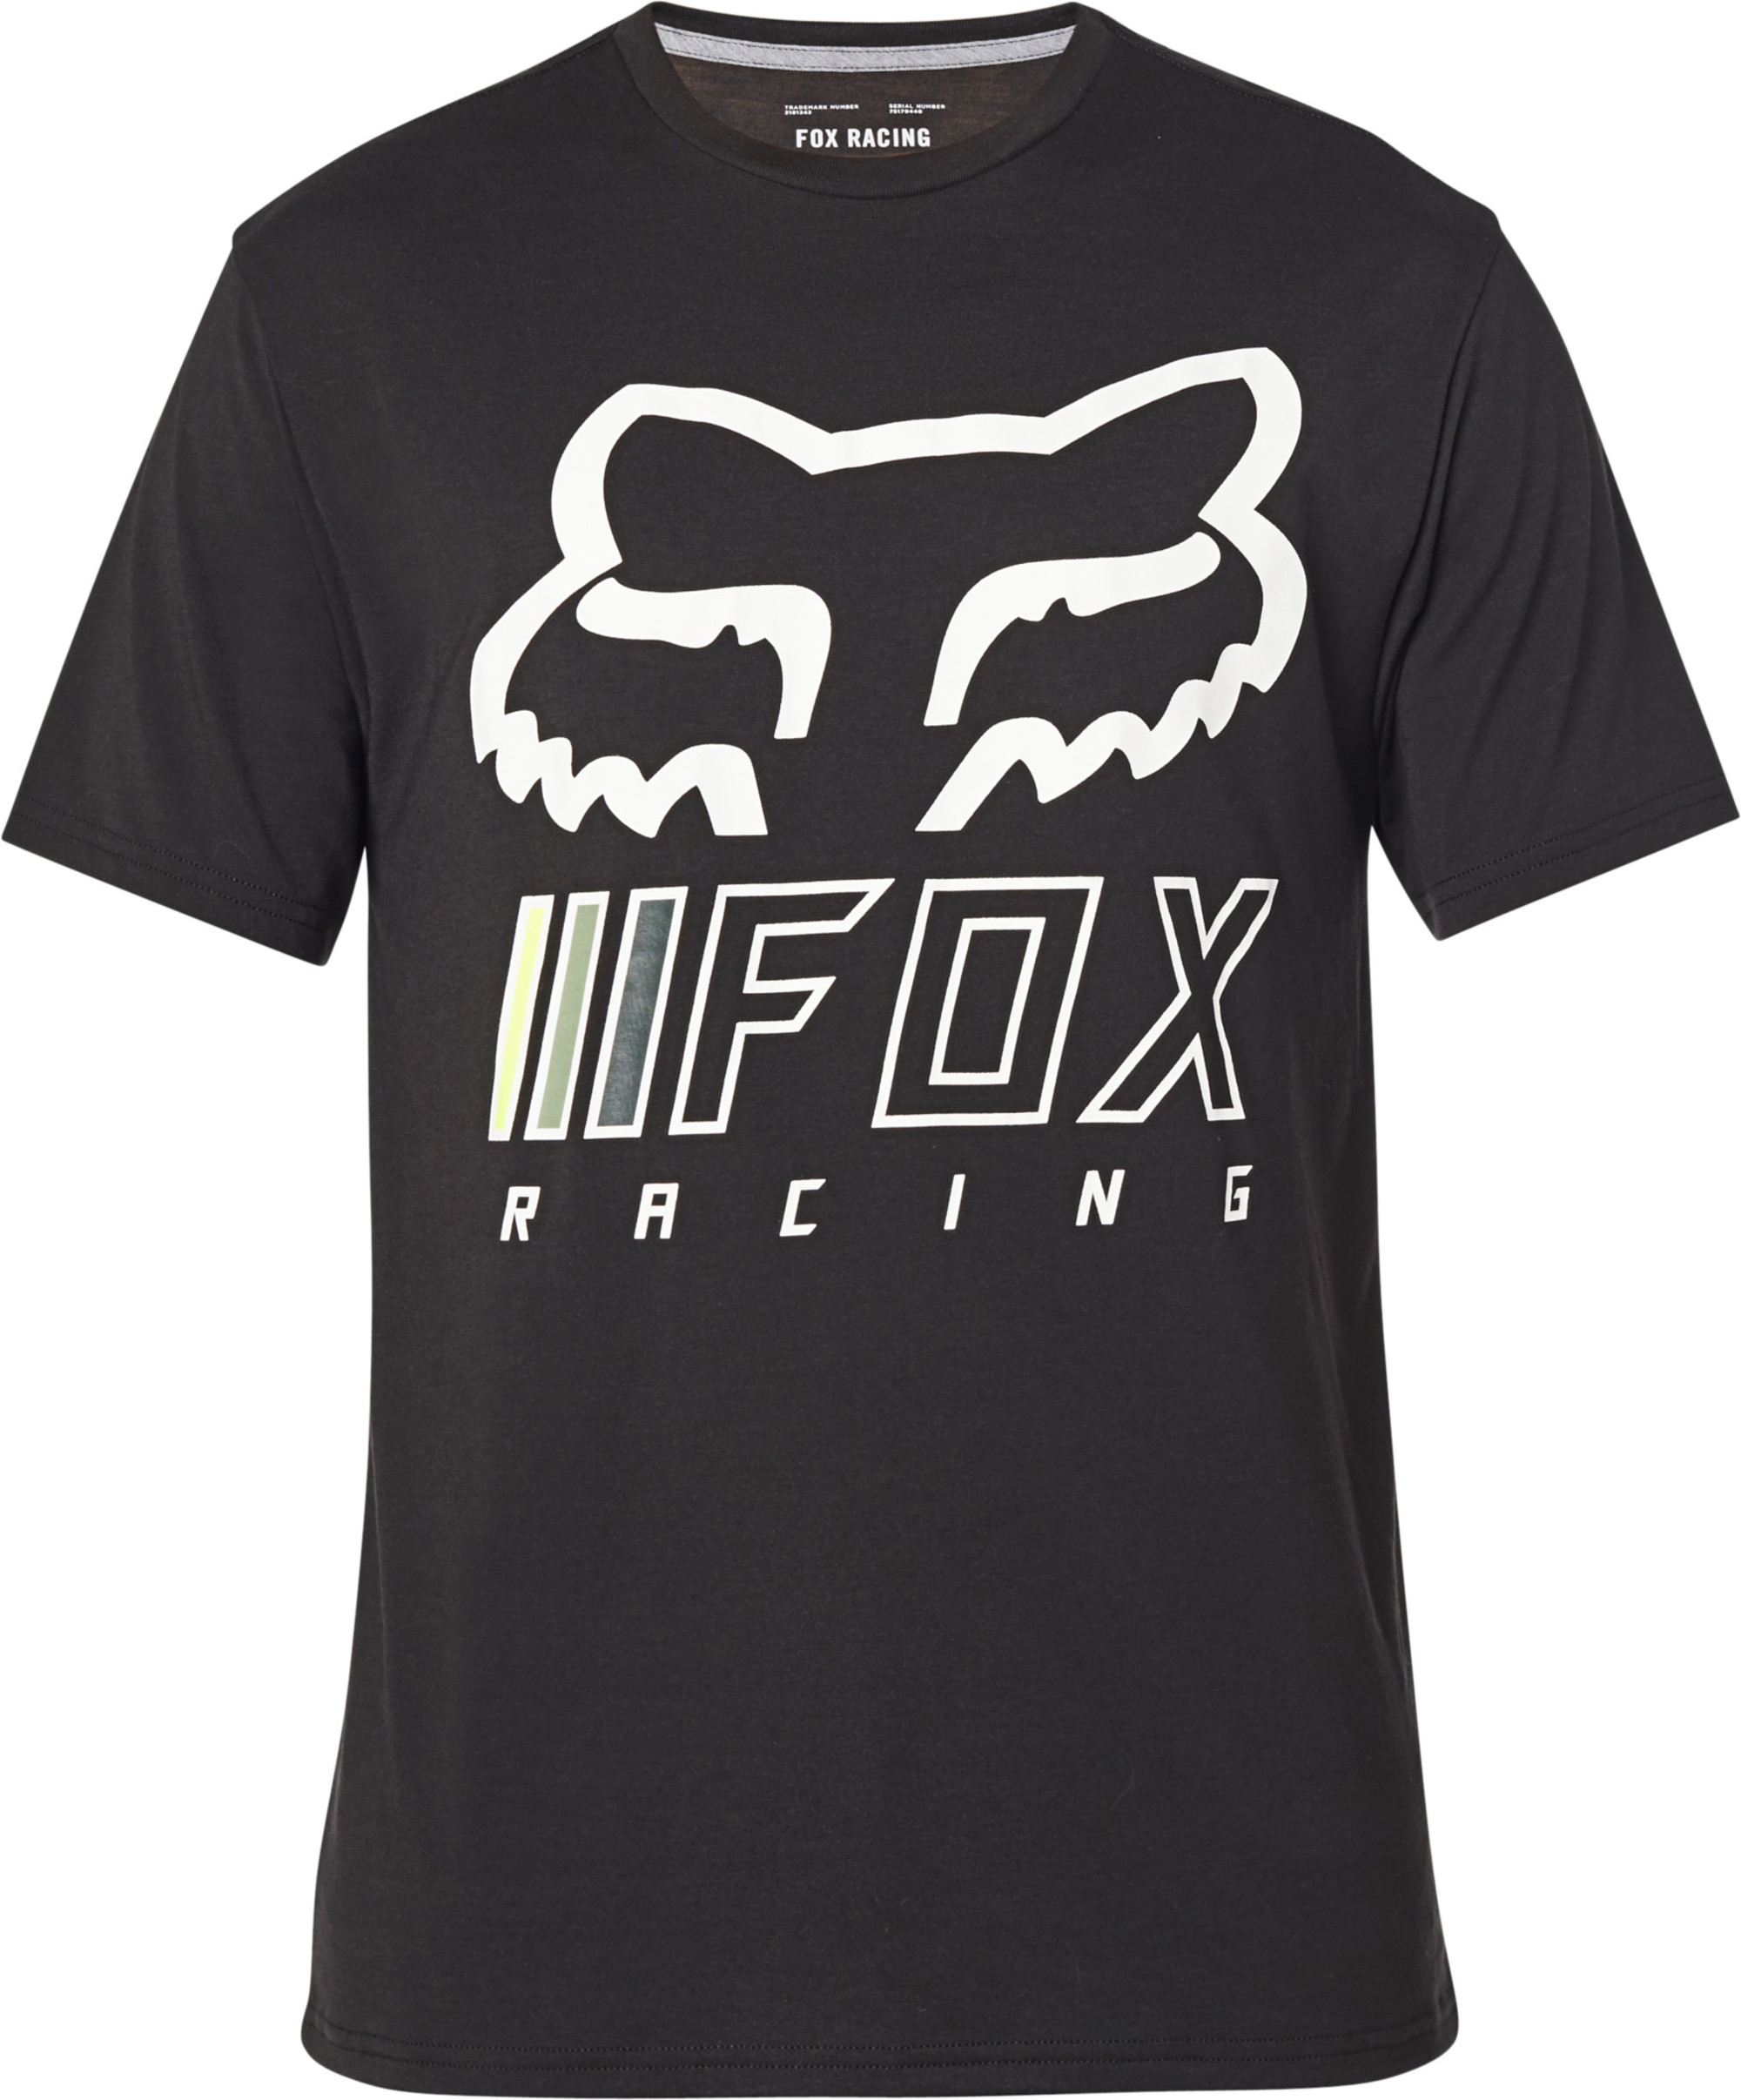 fox racing t-shirt shirts for men overhaul tech